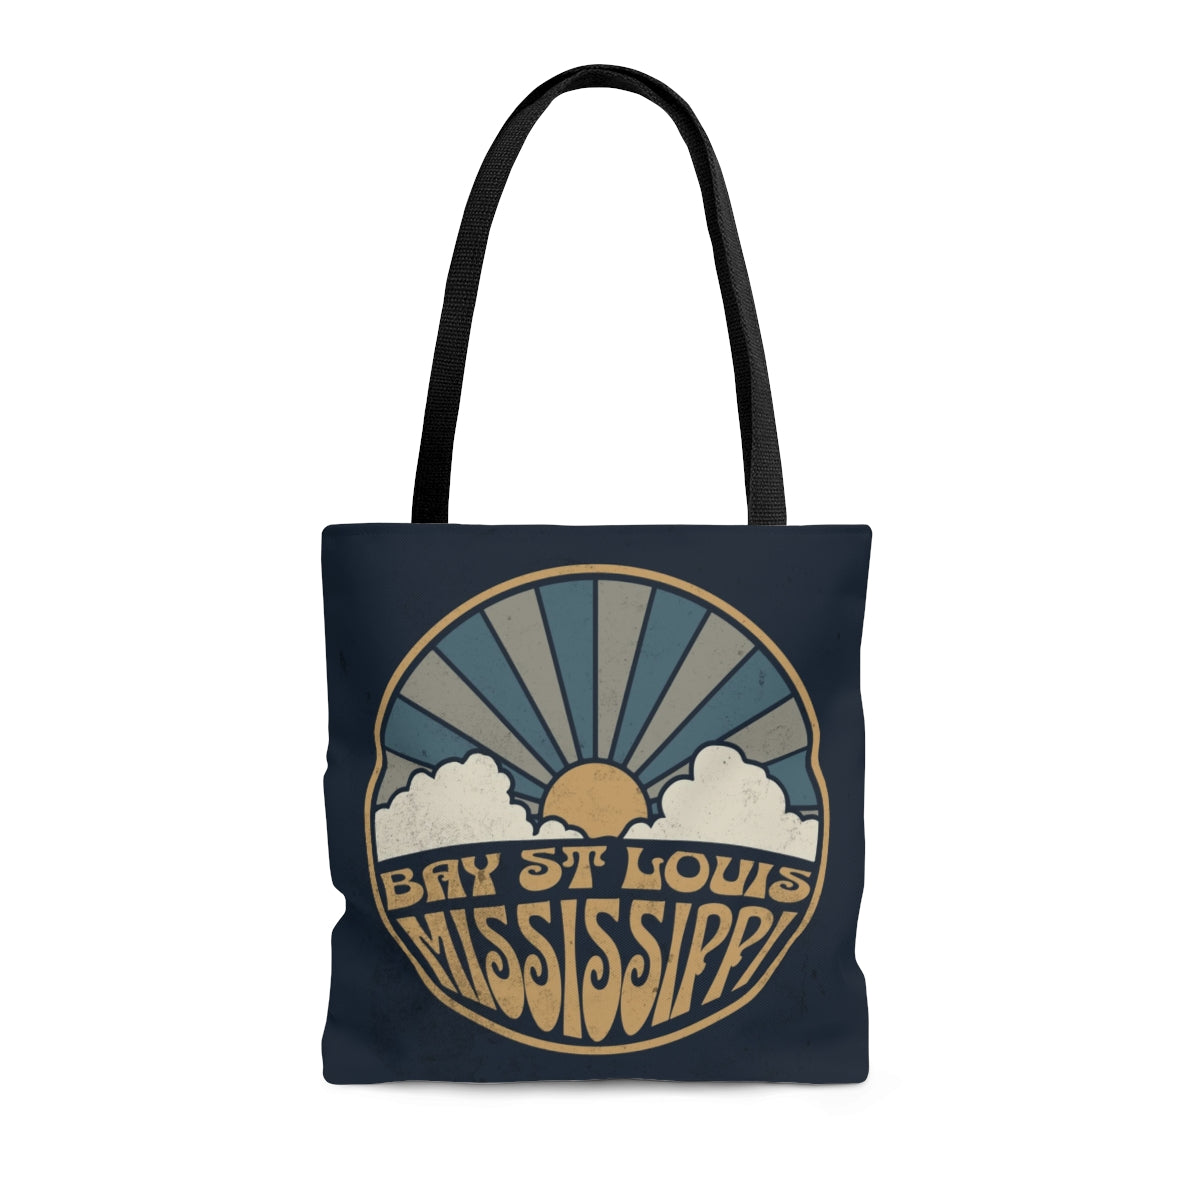 Bay St Louis Mississippi Tote Bag